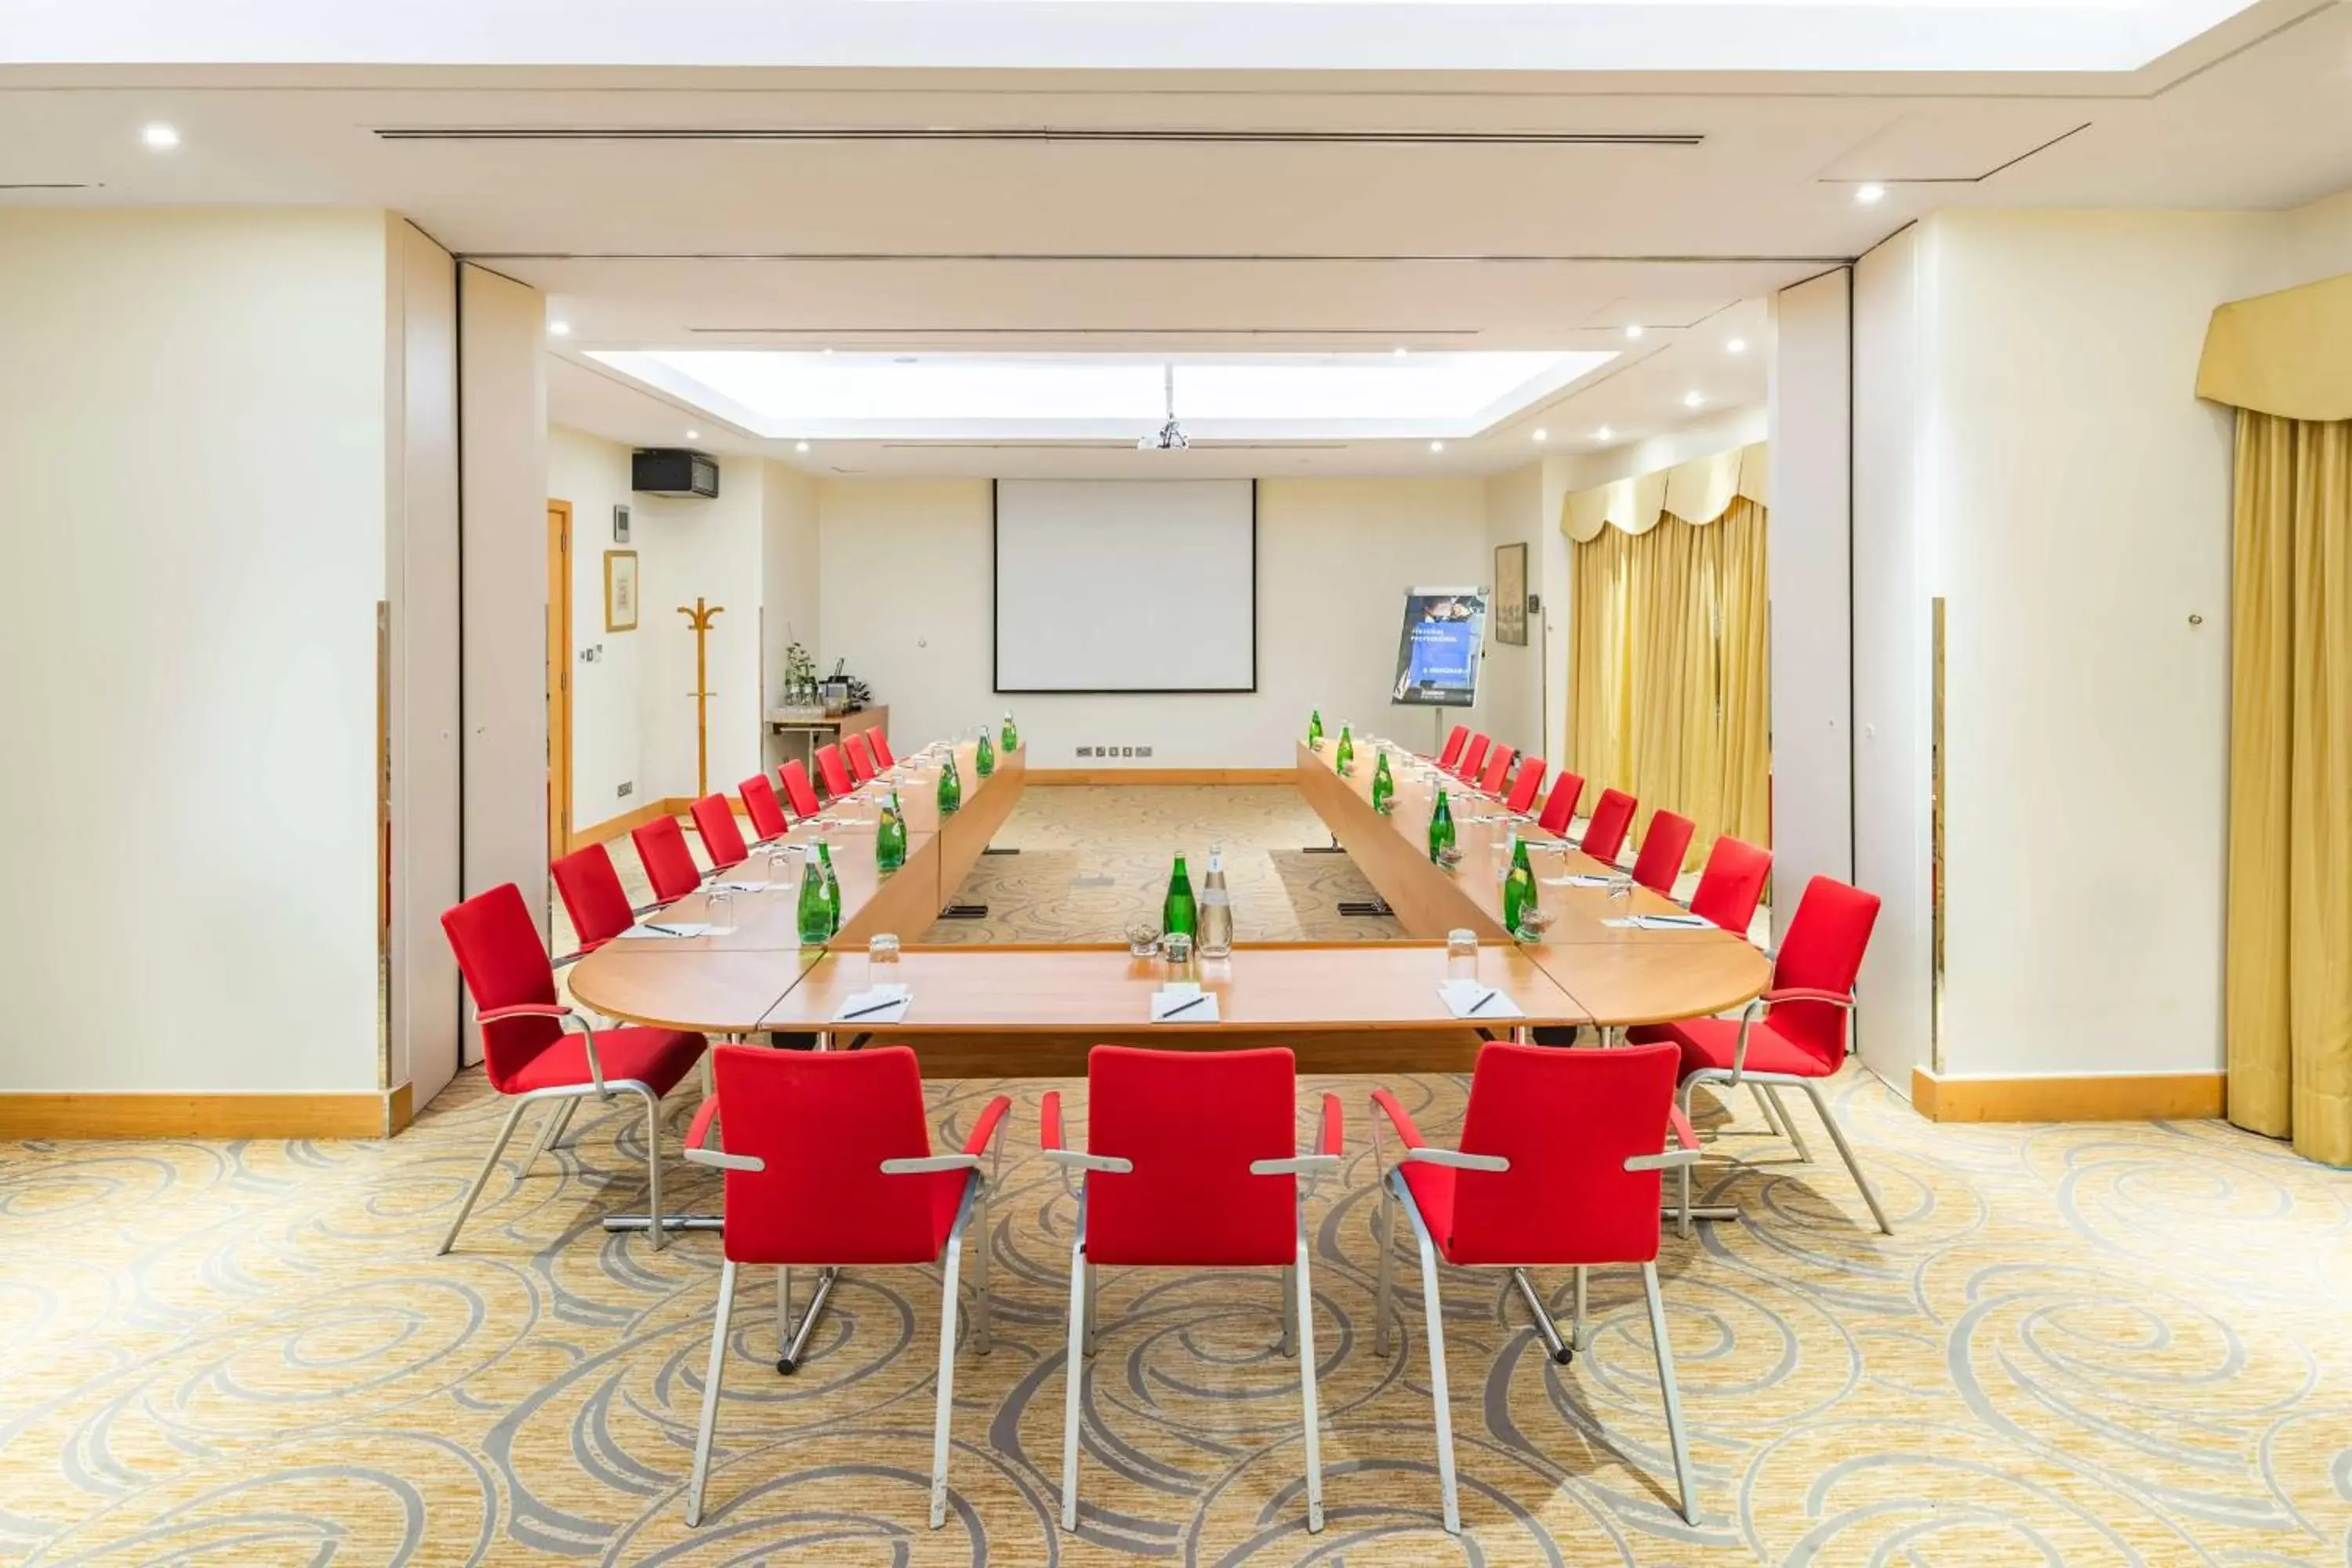 Meeting/conference room in Radisson Blu Hotel, Riyadh